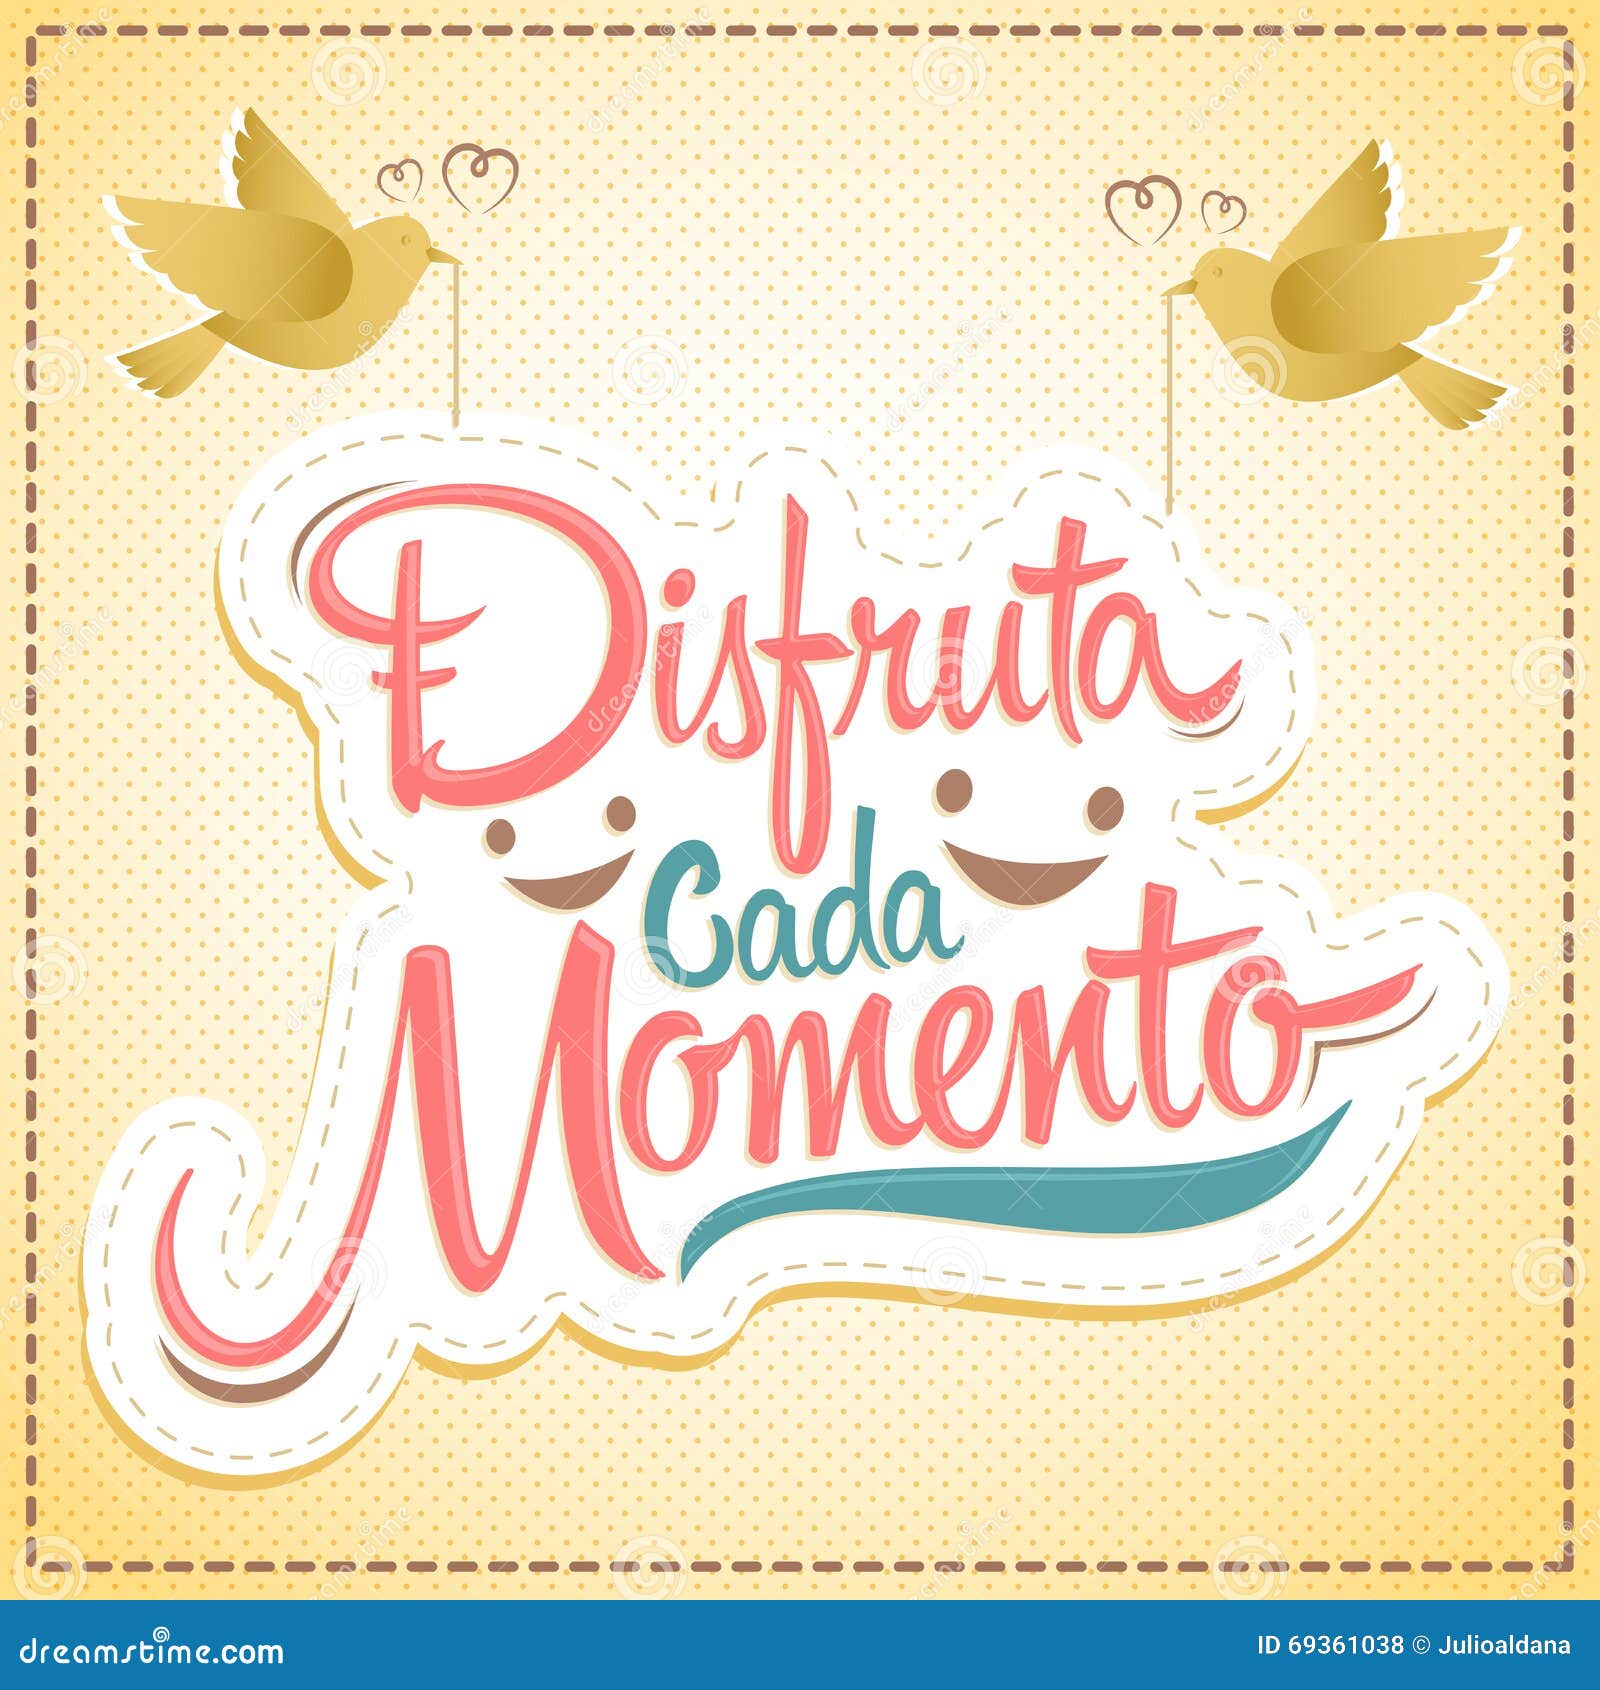 disfruta cada momento - enjoy every moment spanish text